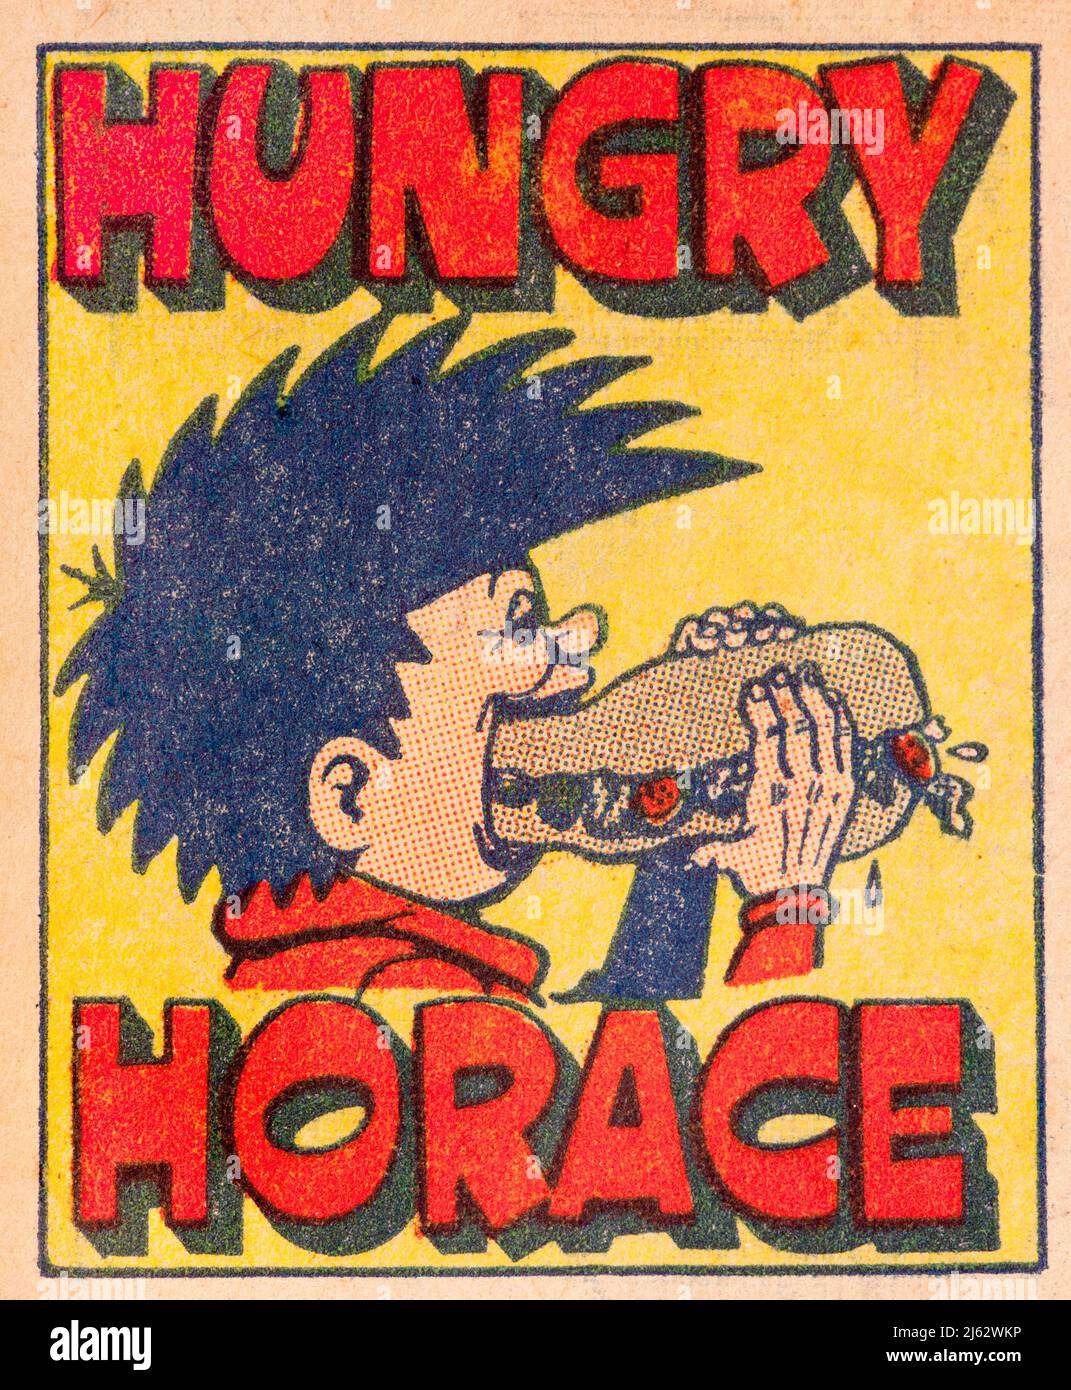 Dessin animé d'une horace affamée de 1970s British Sparky Comic Banque D'Images